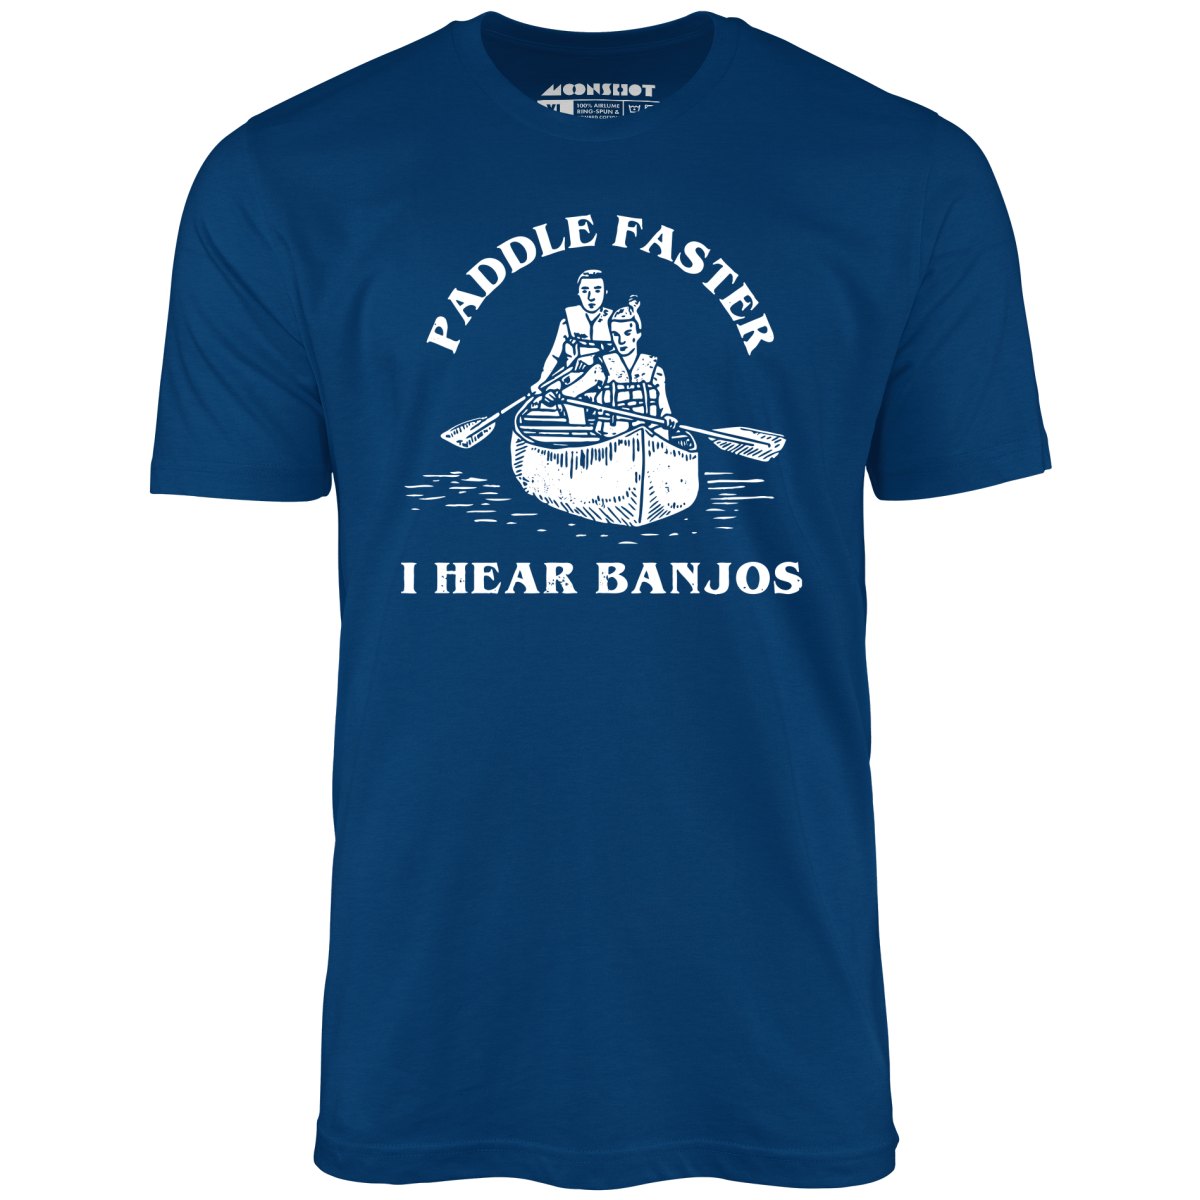 Paddle Faster I Hear Banjos - Unisex T-Shirt